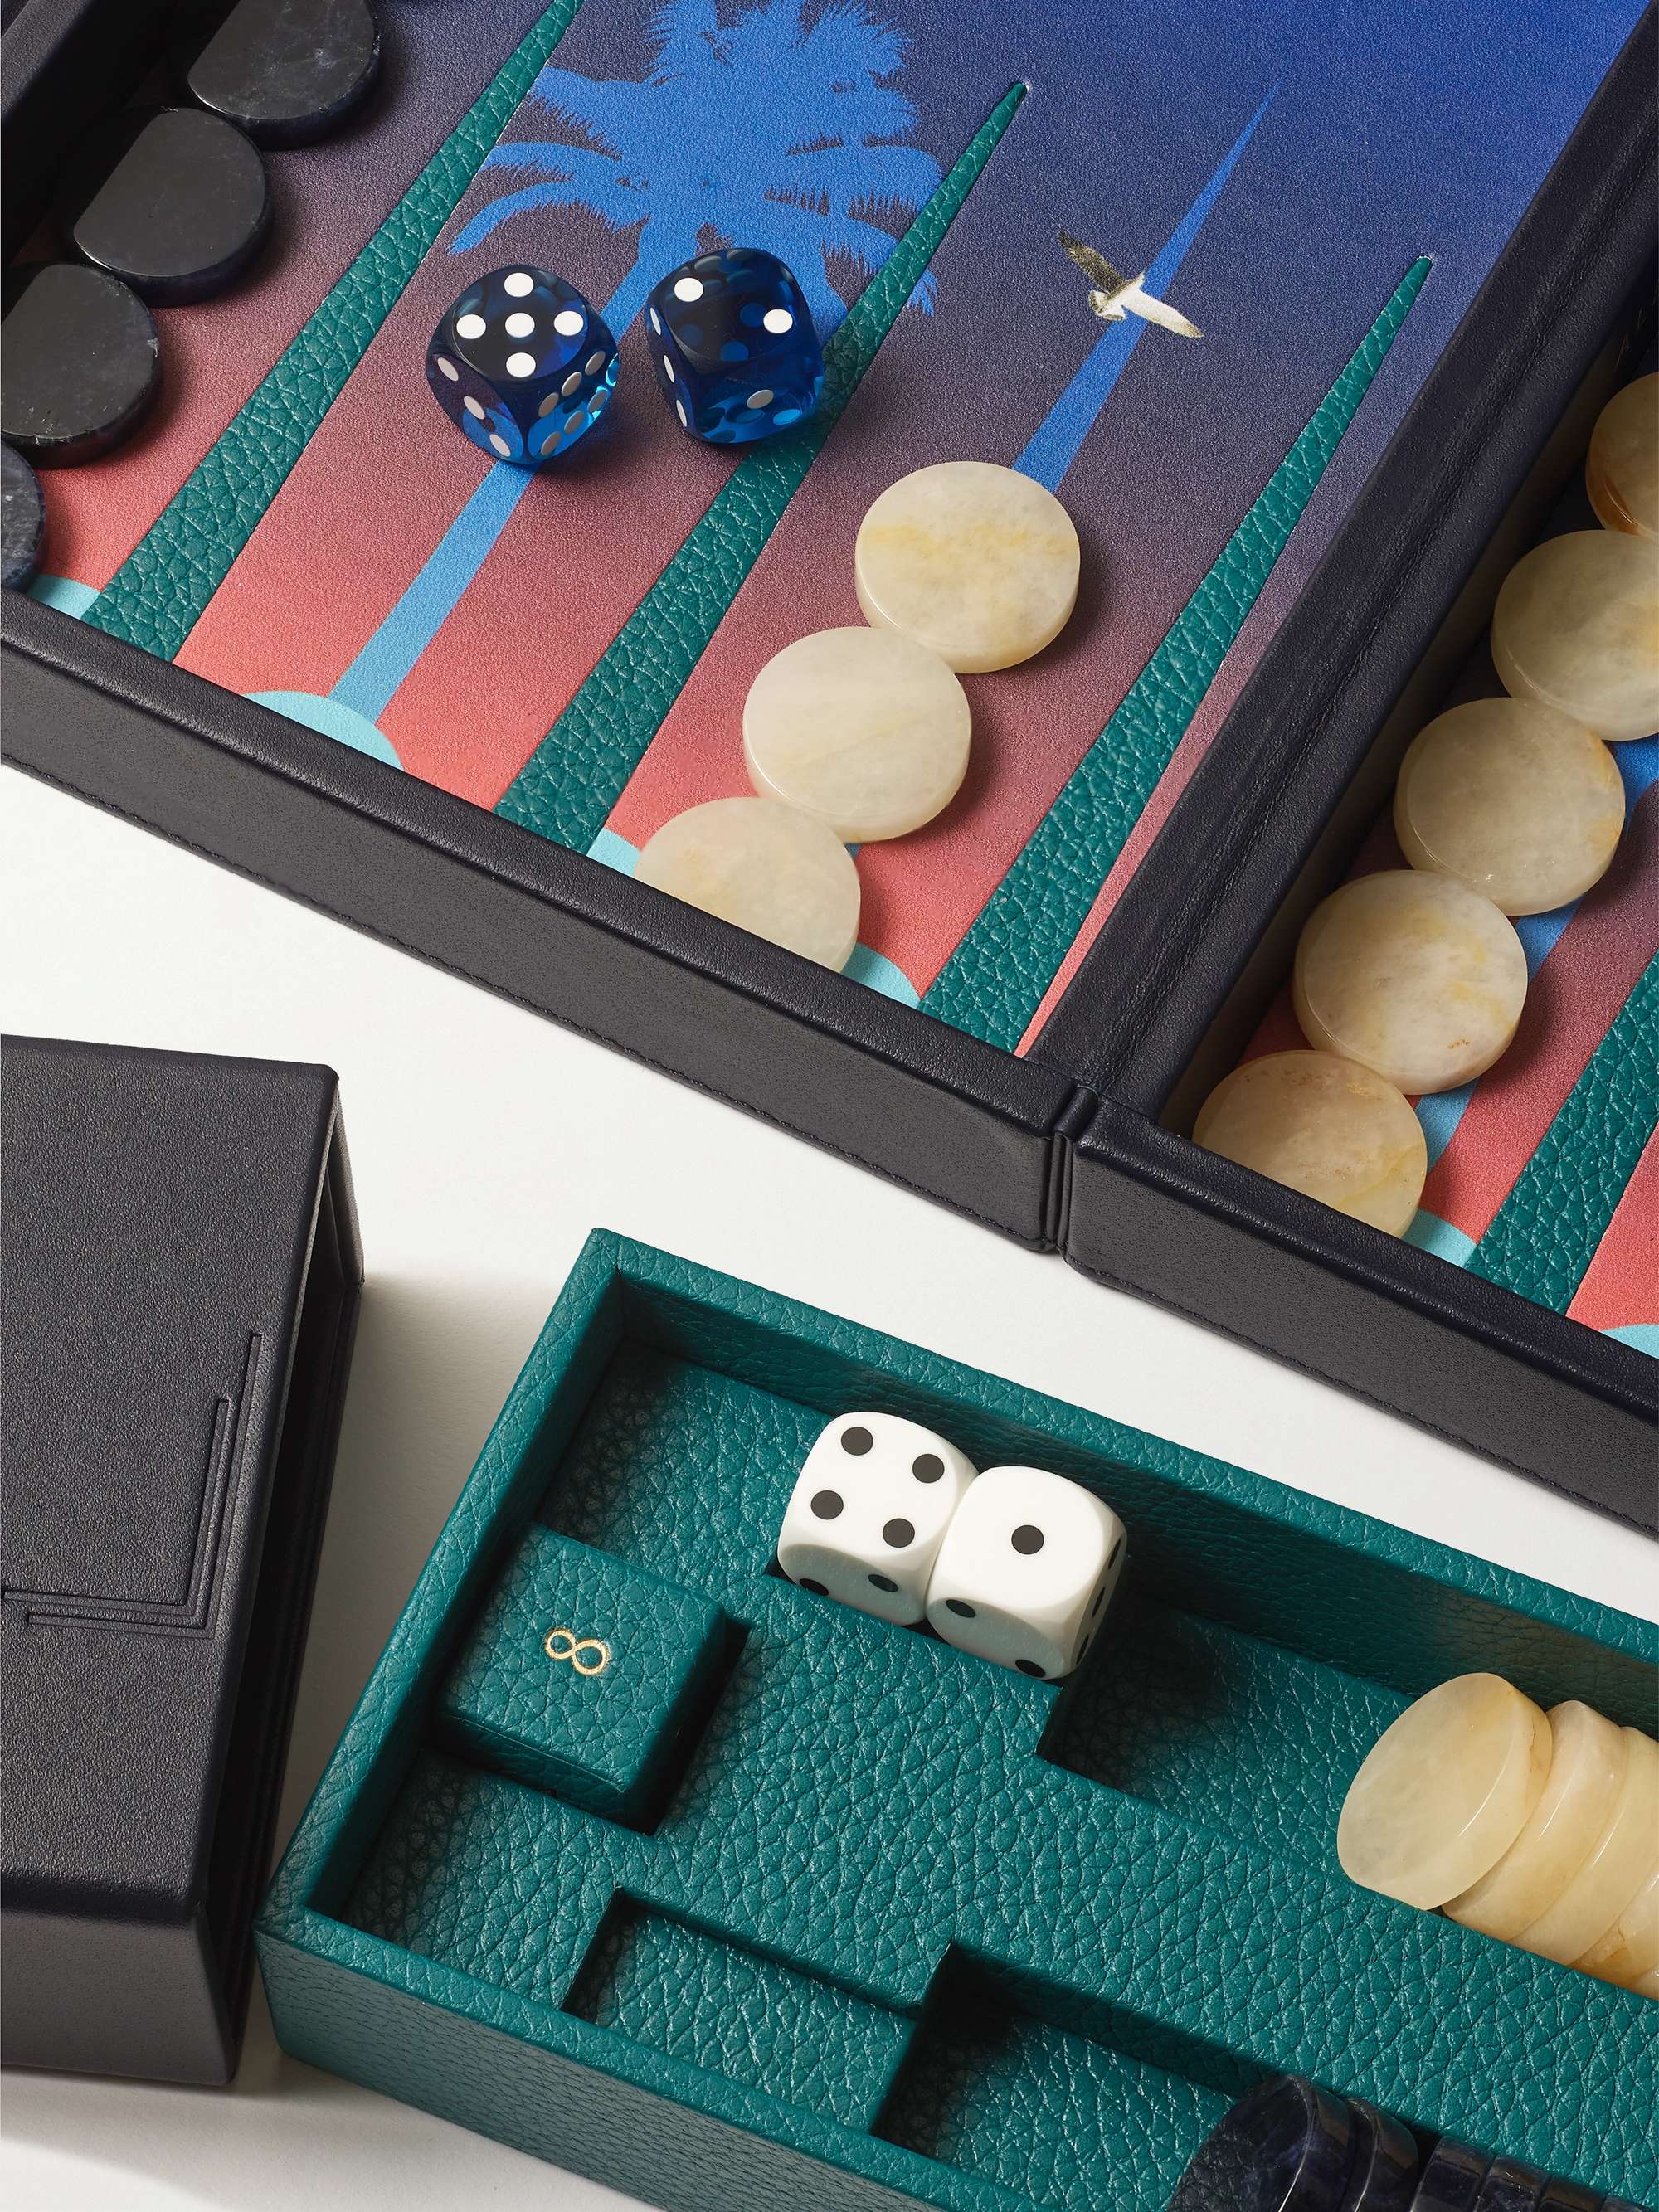 ALEXANDRA LLEWELLYN Dusk Travel Leather Backgammon Set